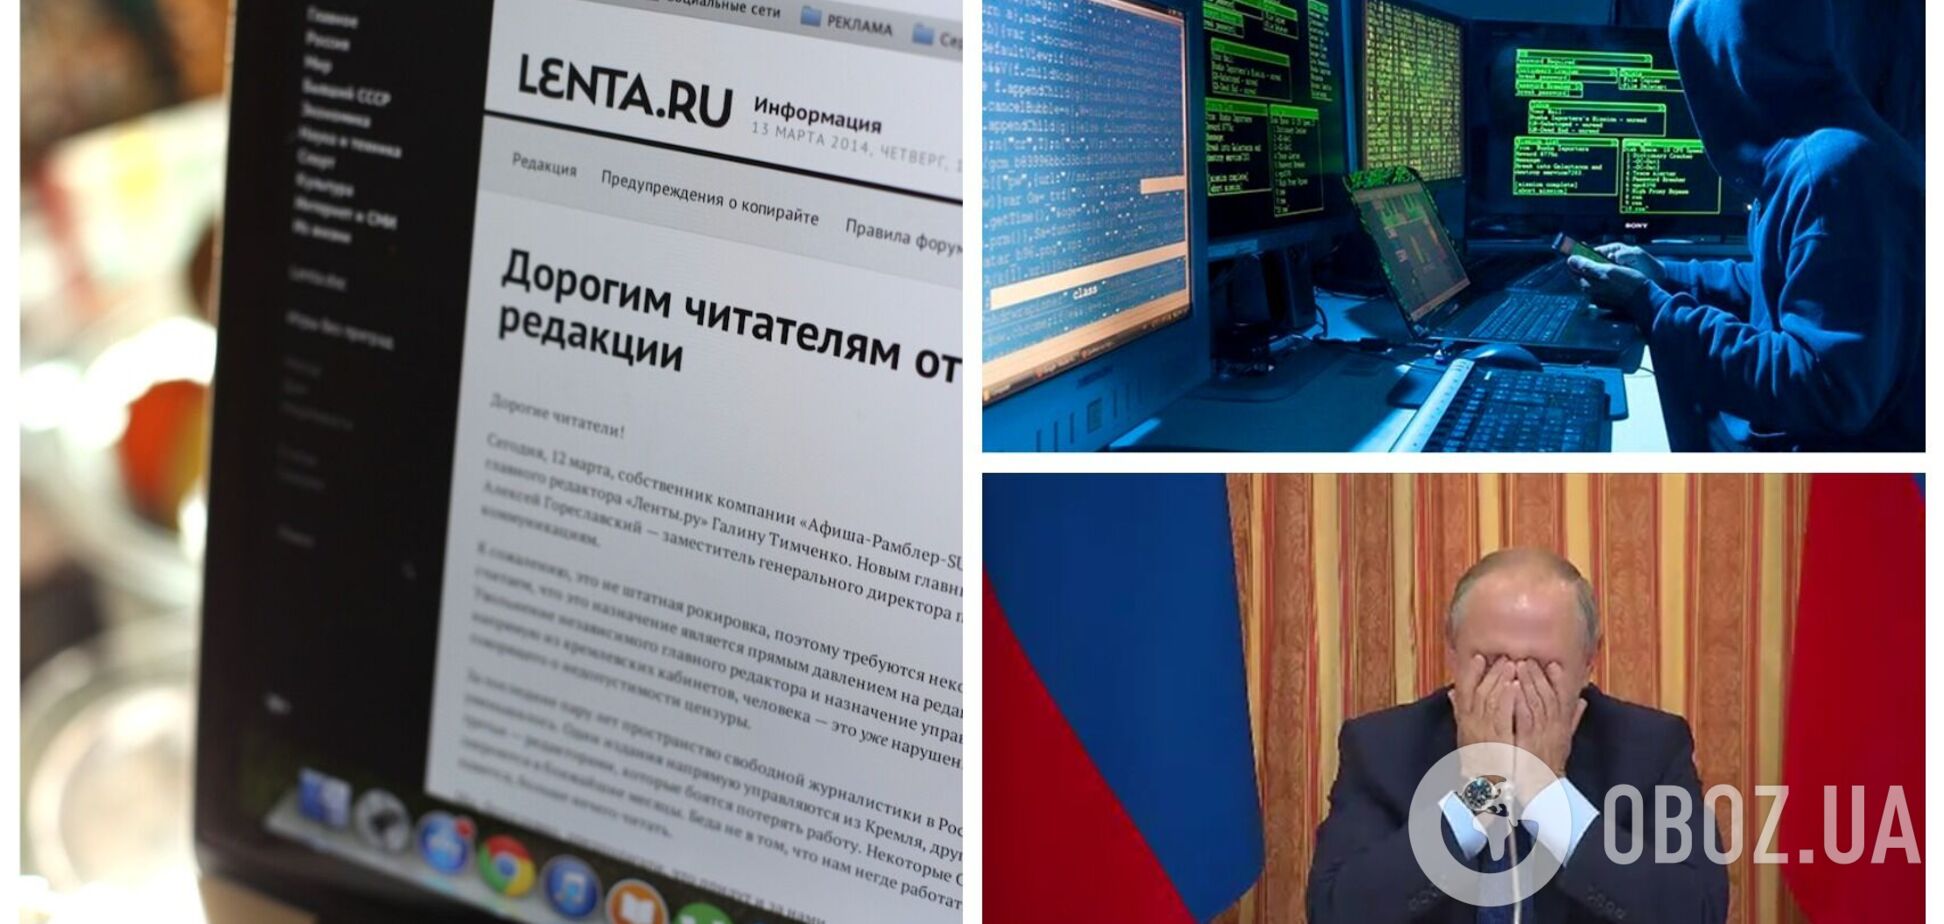 Это были не хакеры: журналист Lenta.ru признался в публикации антивоенного текста и назвал мотив